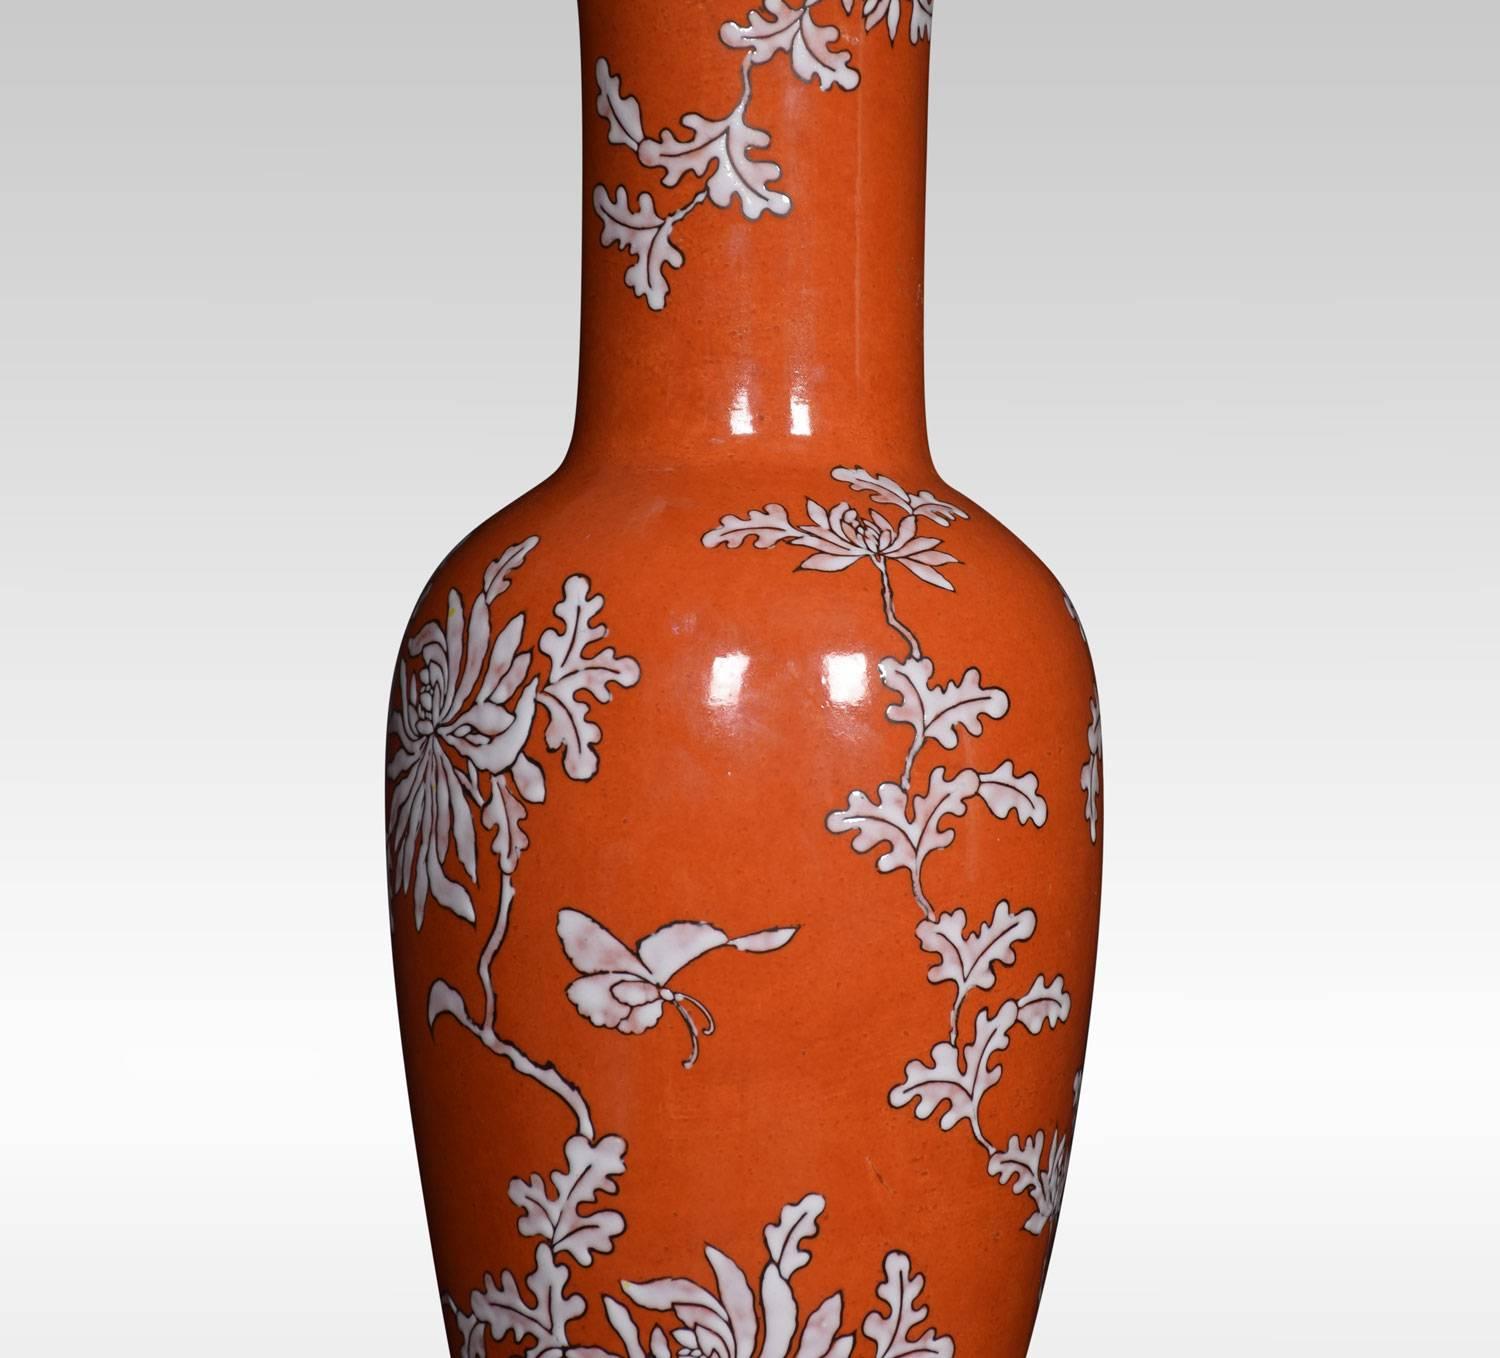 Une lampe de table chinoise de forme balustre, avec un fond rouge et des vignes florales, reposant sur une base tournée et percée. Avec une teinte assortie.
Dimensions :
Hauteur totale avec abat-jour 29 pouces
Hauteur de la lampe 23